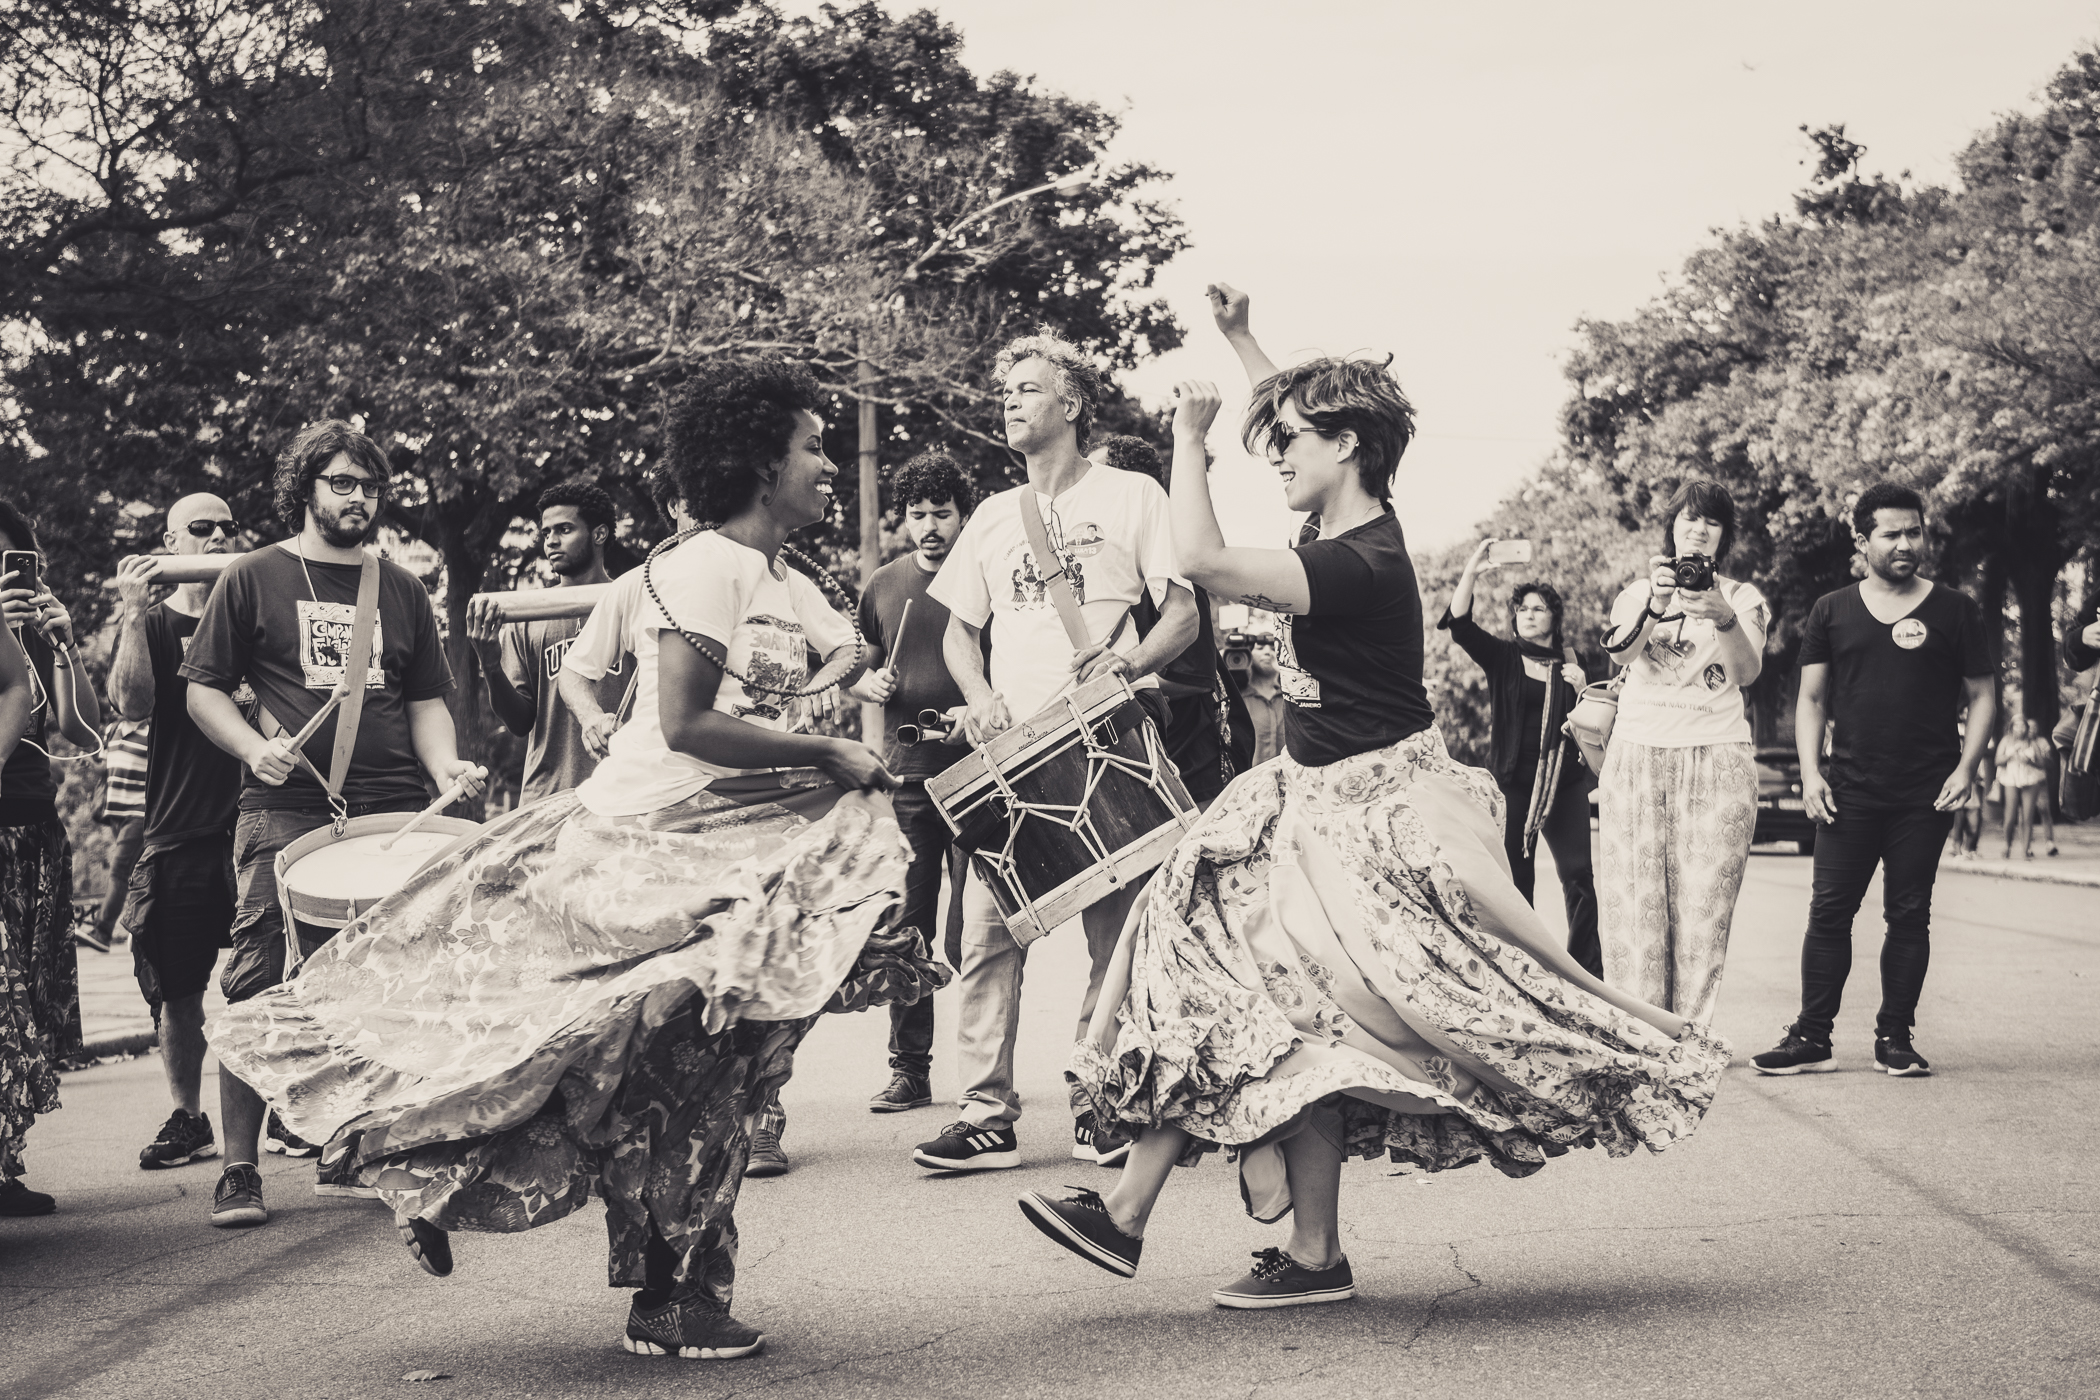 duas mulheres de saia comprida dançam na rua, enquanto um grupo toca tambores e fotografa